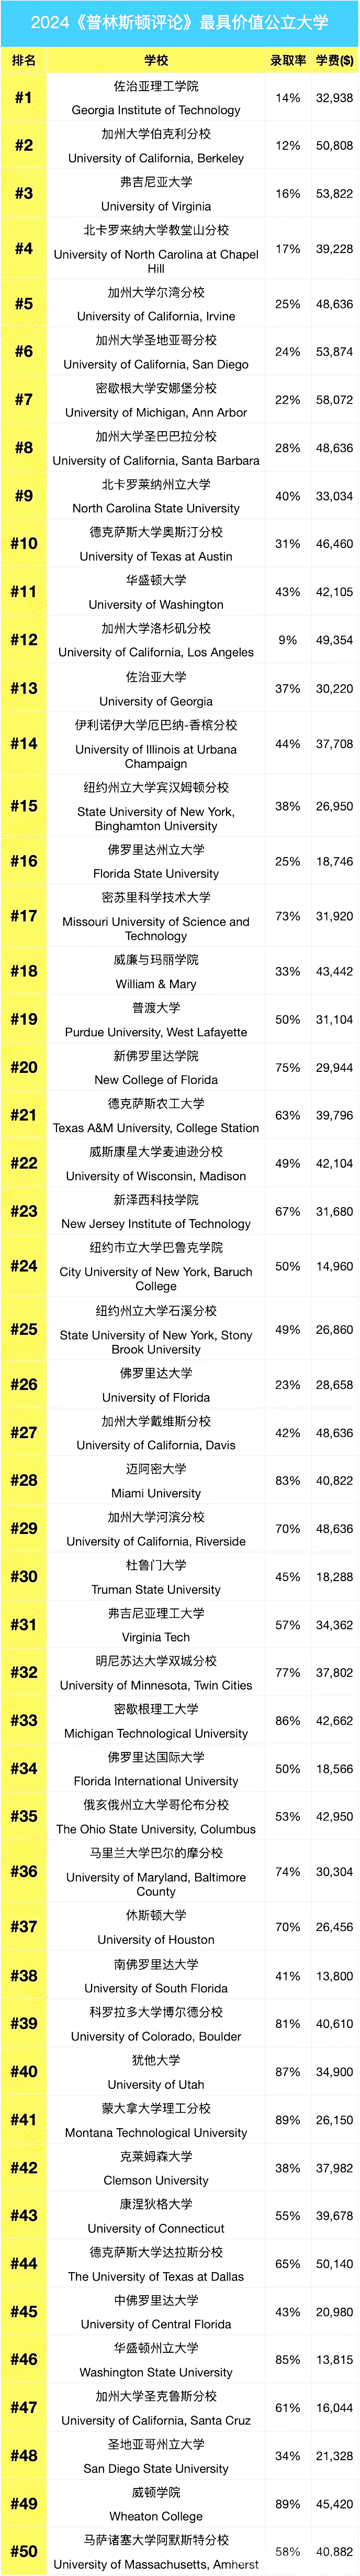 2024《普林斯顿评论》最具价值大学排名揭晓!